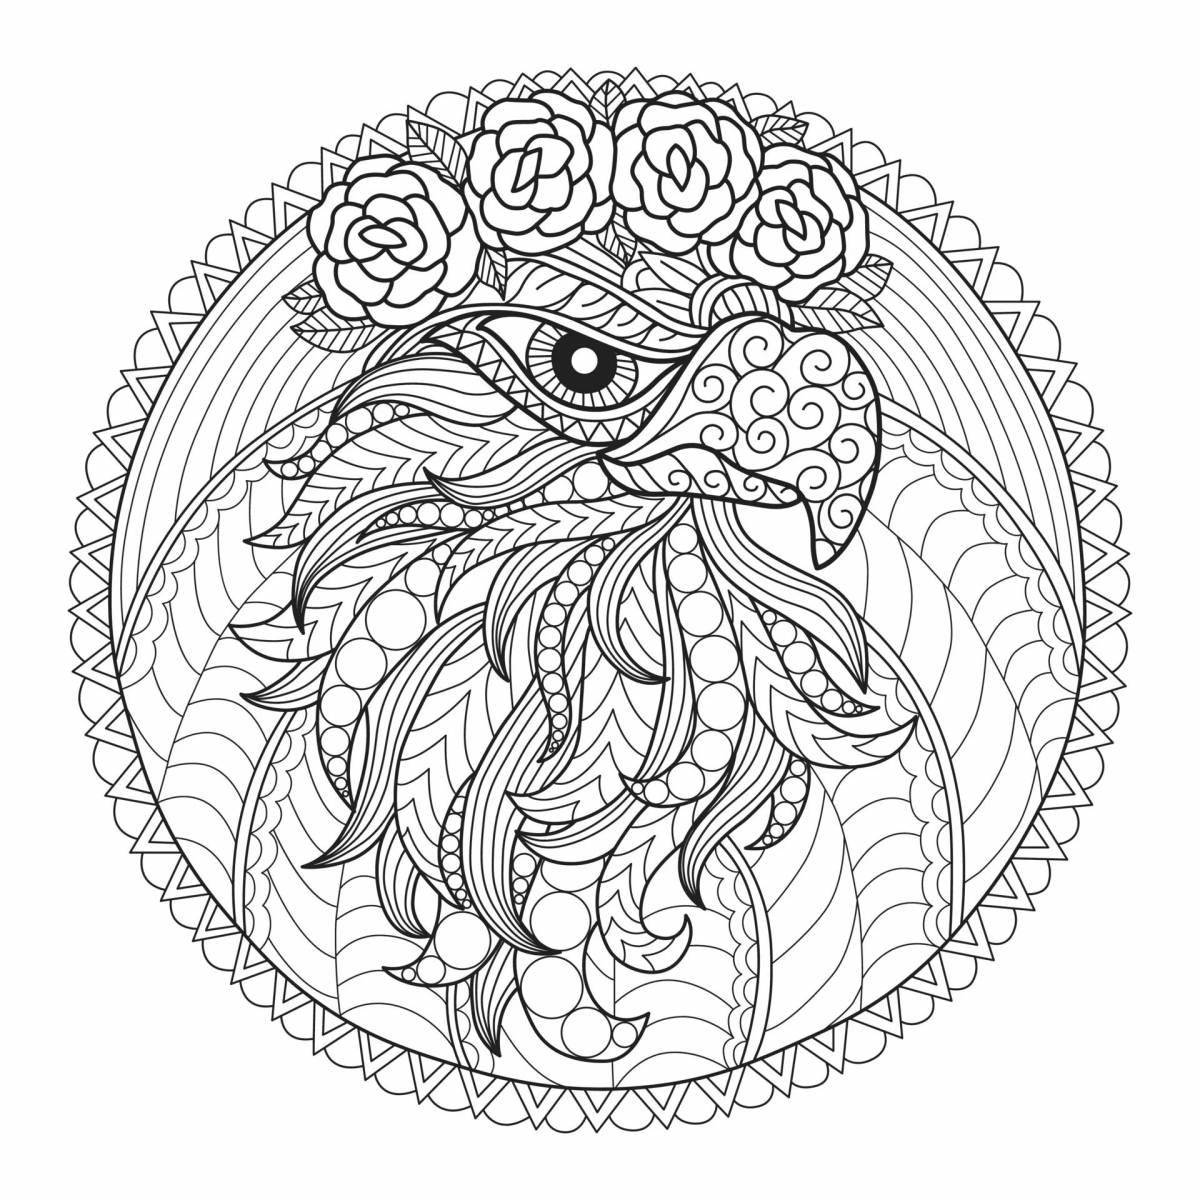 Королевская раскраска антистрессовый орел